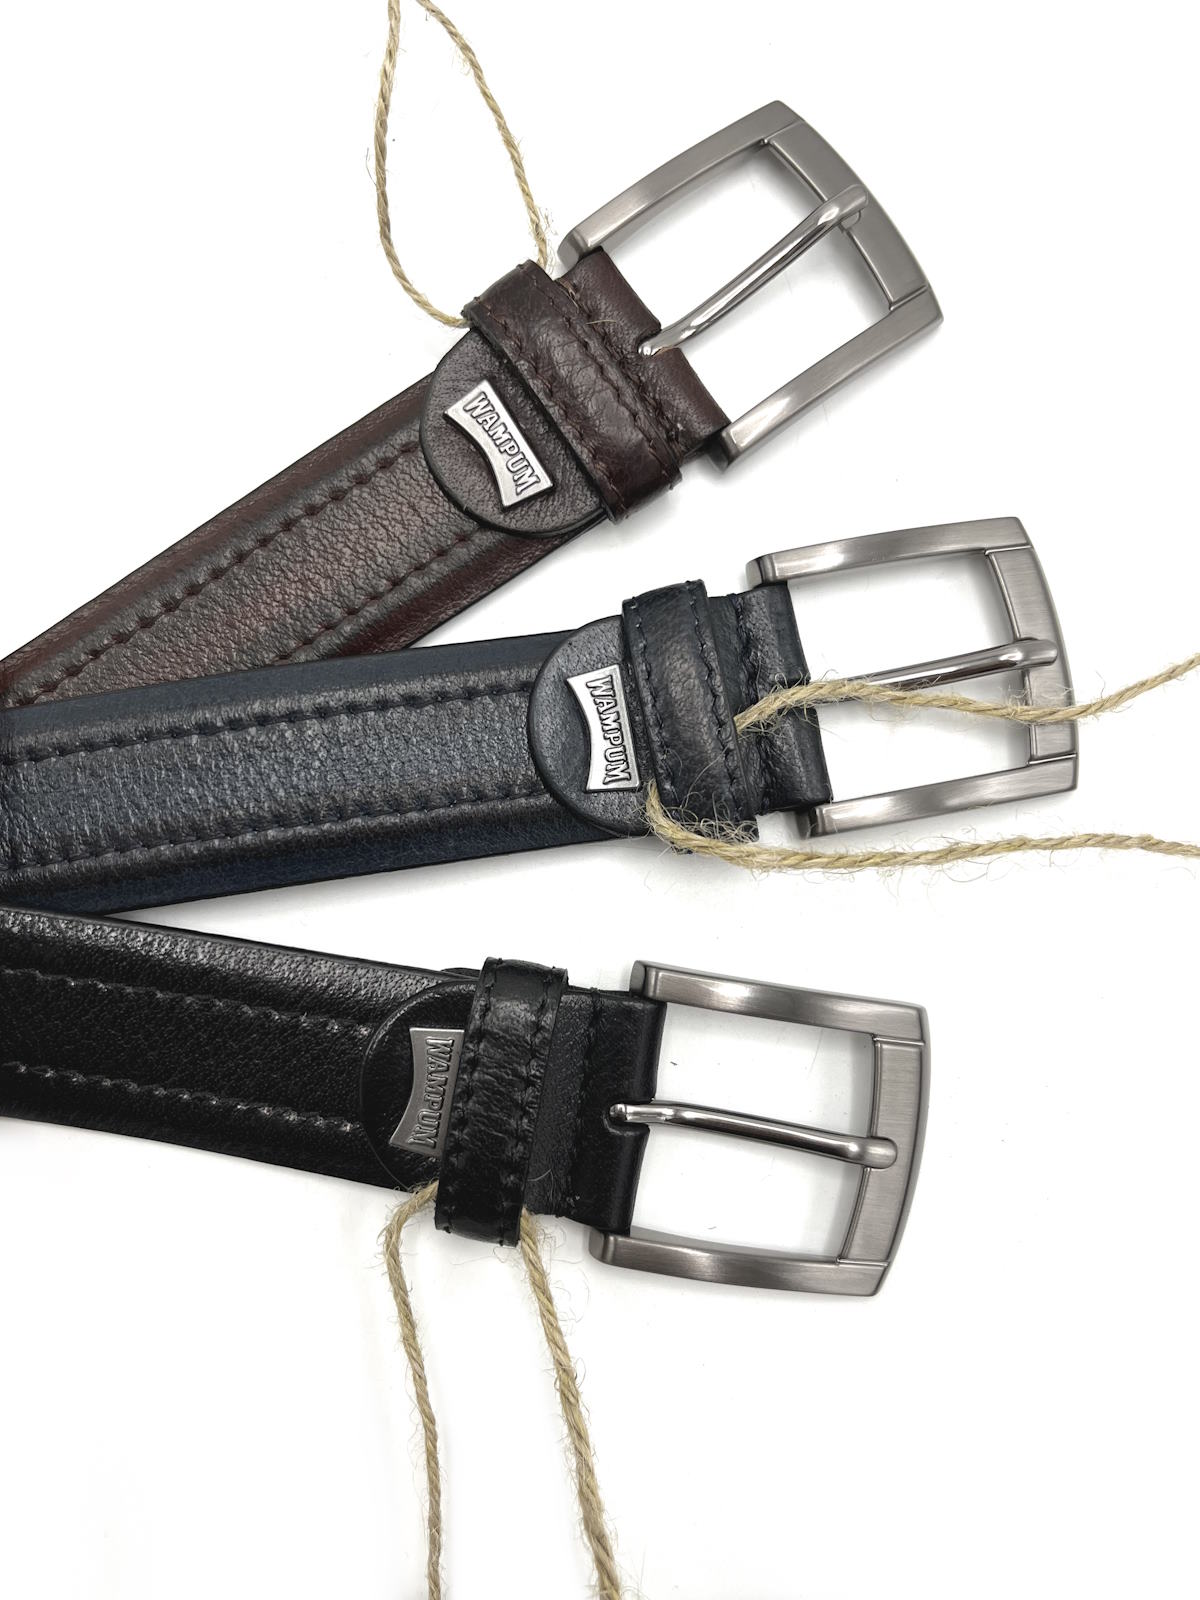 Genuine leather belt, Brand Wampum, art. IDK504/35